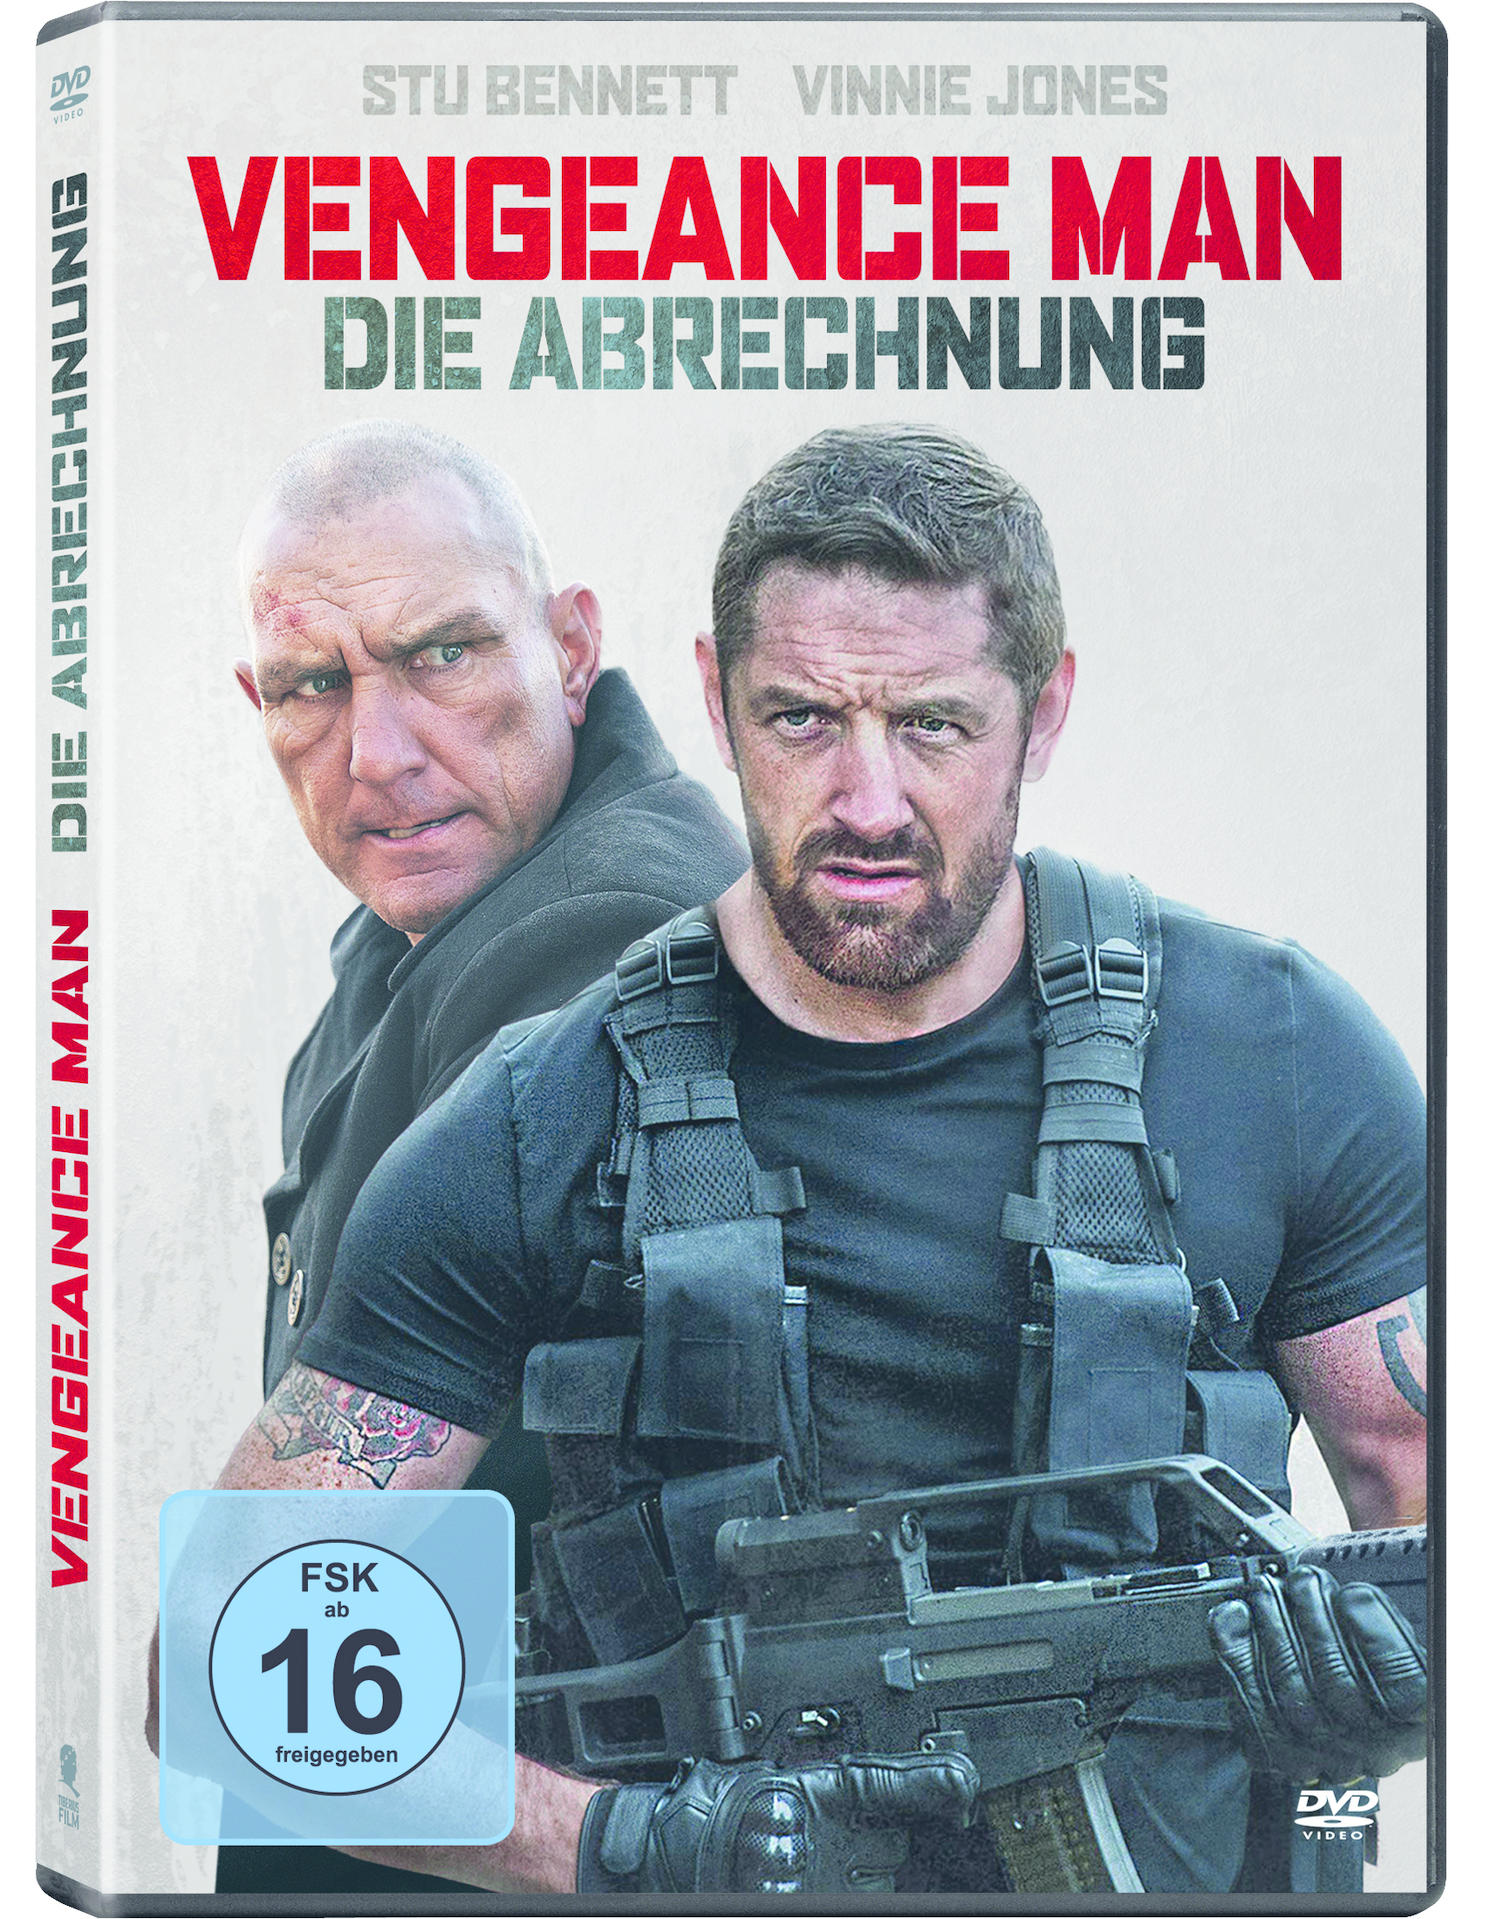 Venegance Man Abrechnung - Die DVD